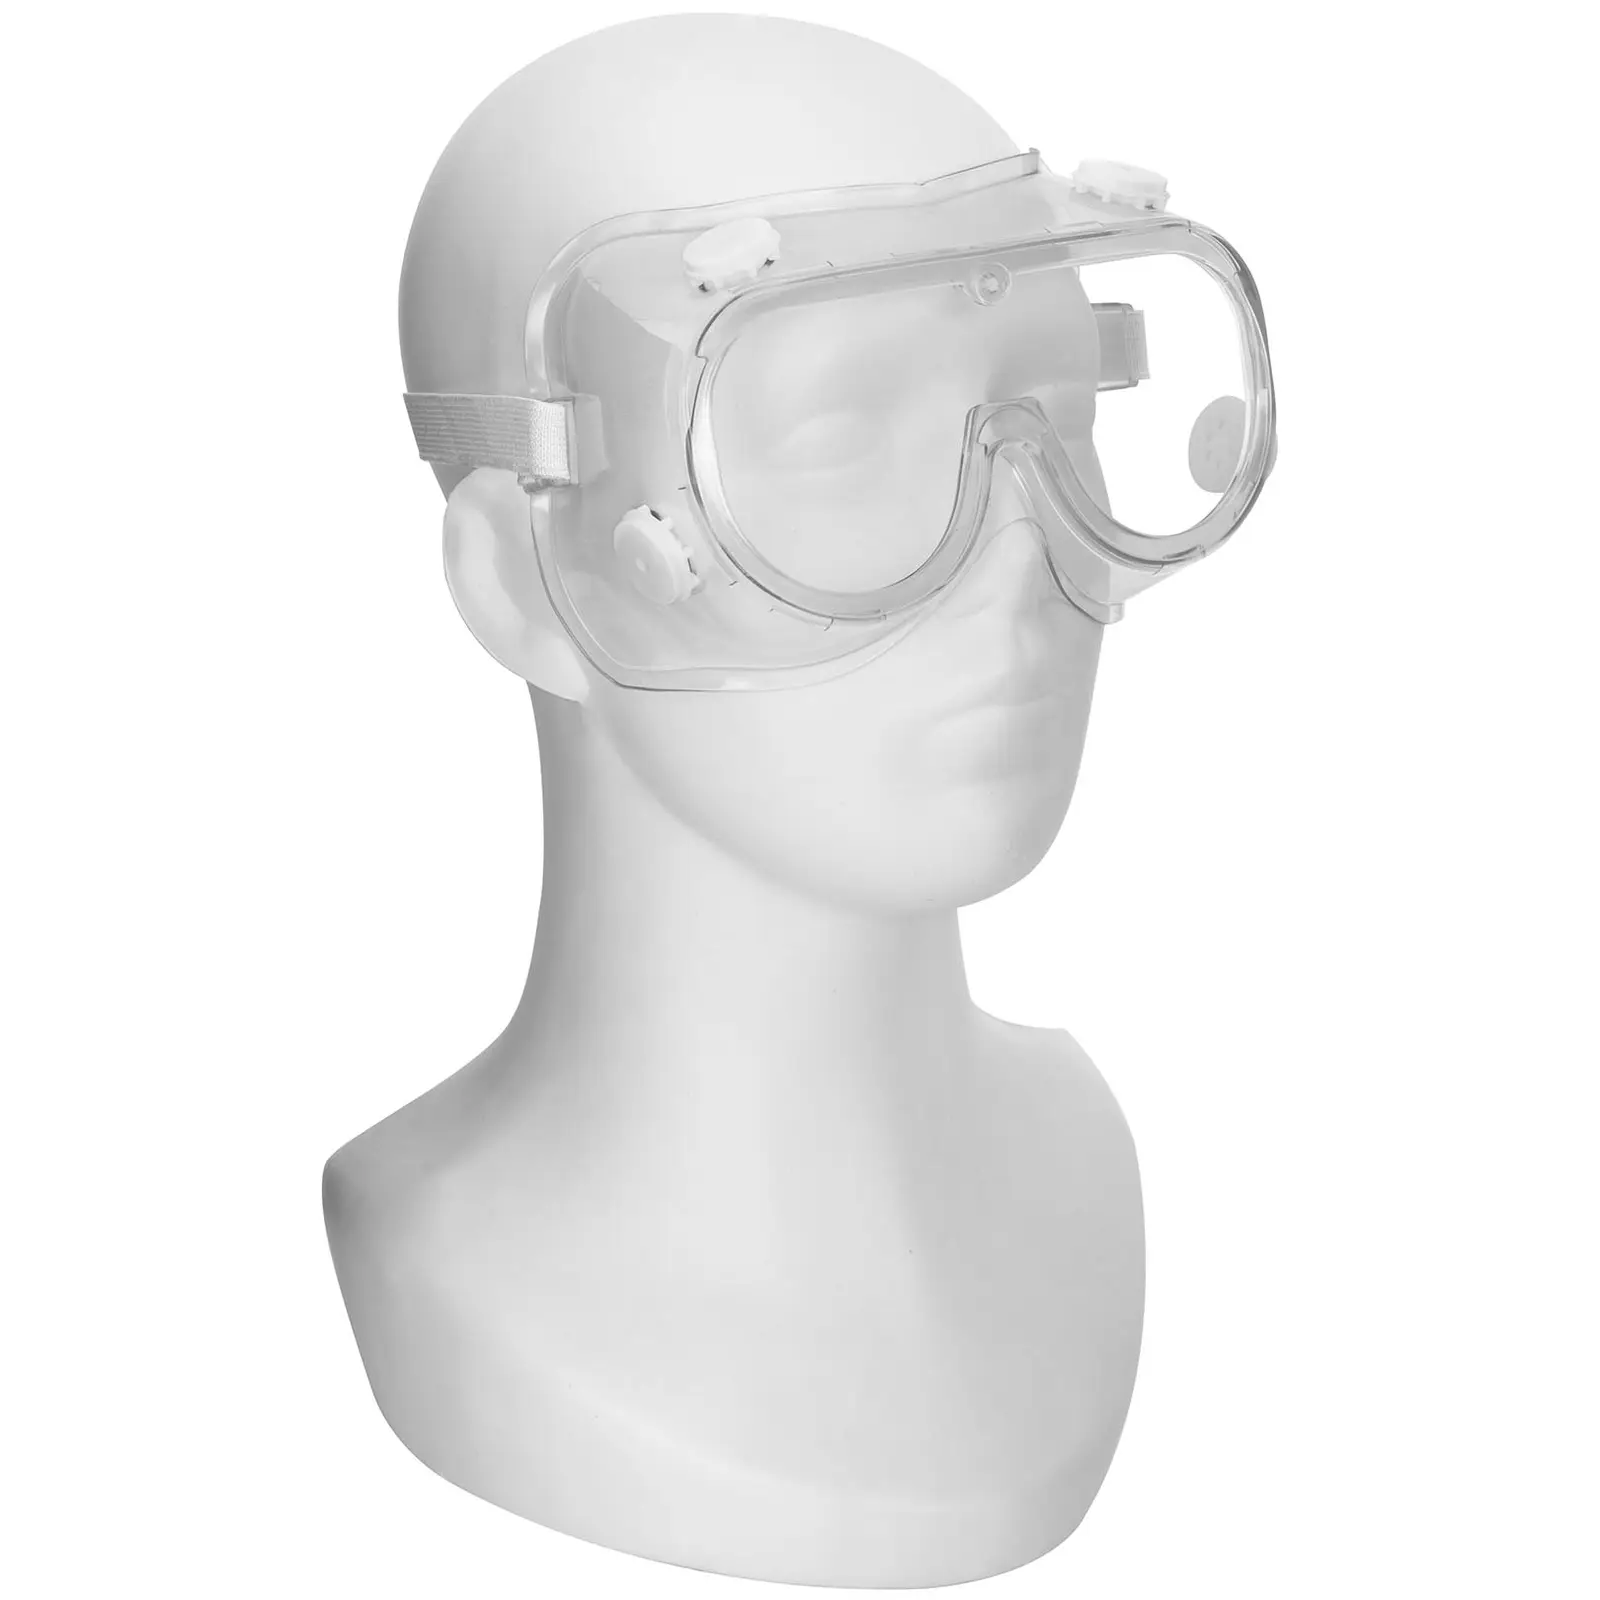 Beskyttelsesbriller - sett på 3 stk. - gjennomsiktig - one size